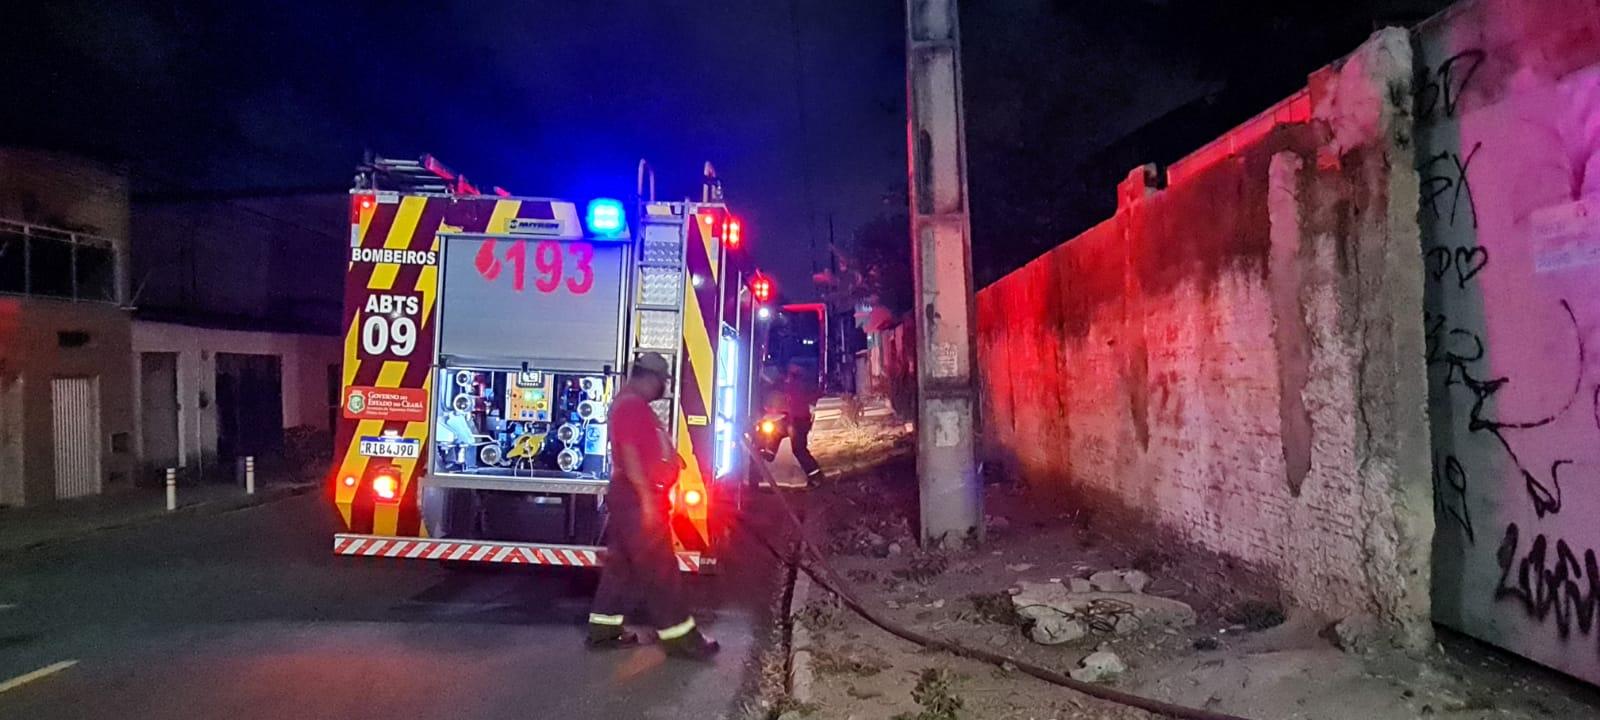 Incêndio atinge terreno de vacaria, e homem impede que bombeiros apaguem as chamas, em Fortaleza